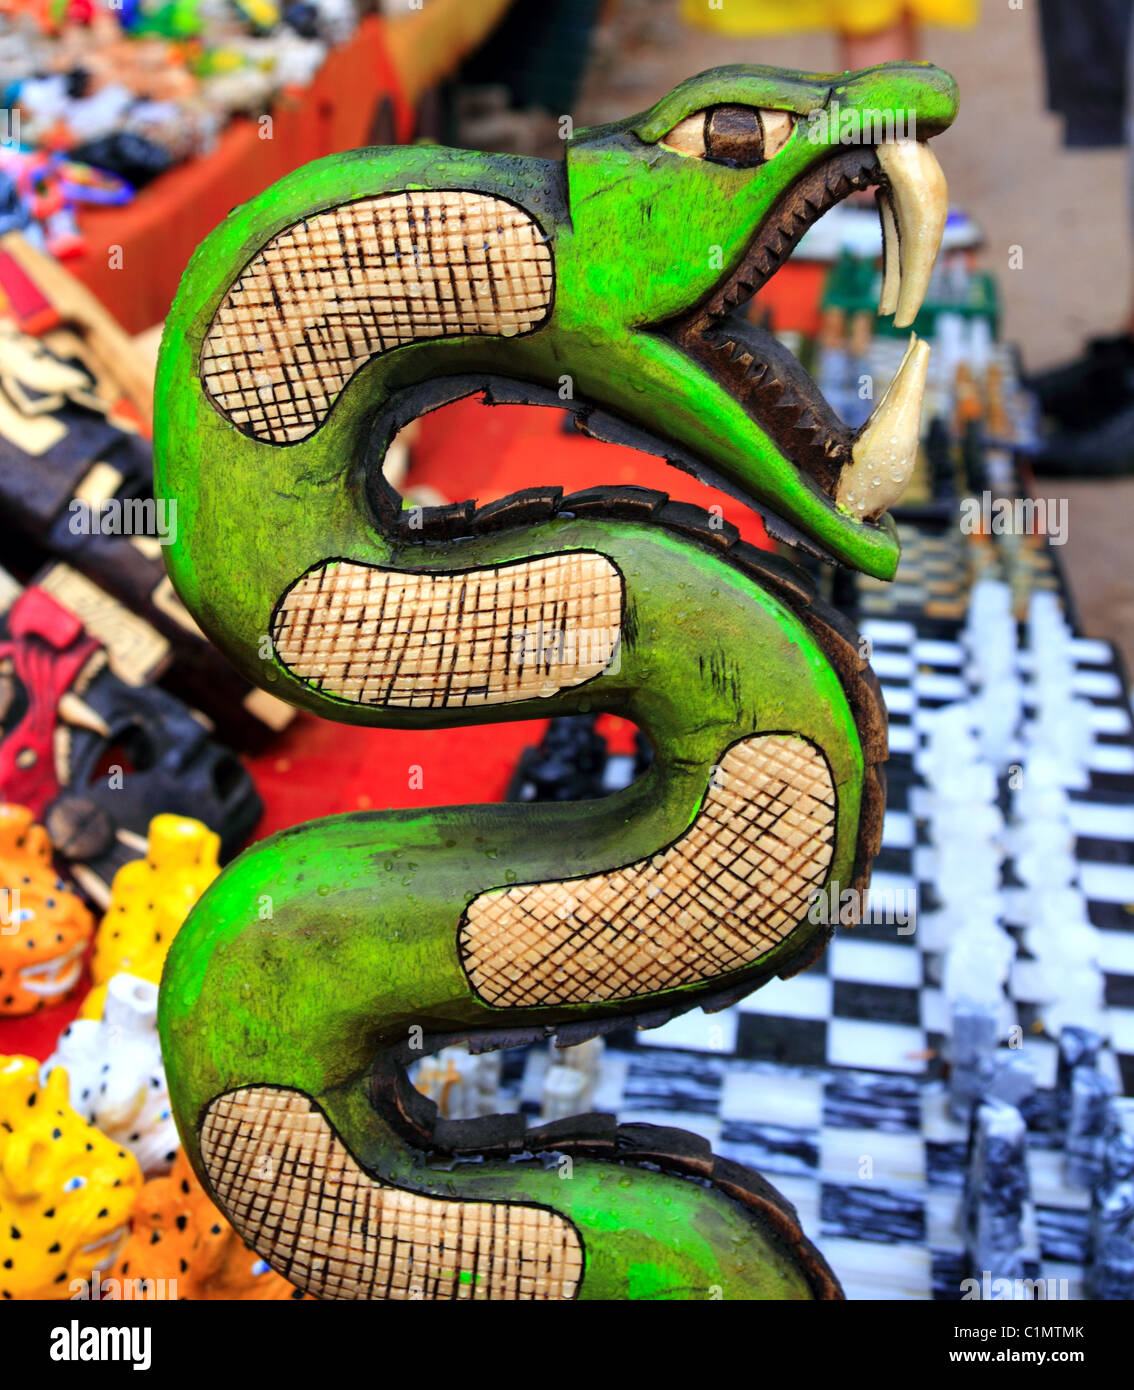 Chichen Itza serpente legno serpente artigianato colorato Messico Maya Yucatan Foto Stock